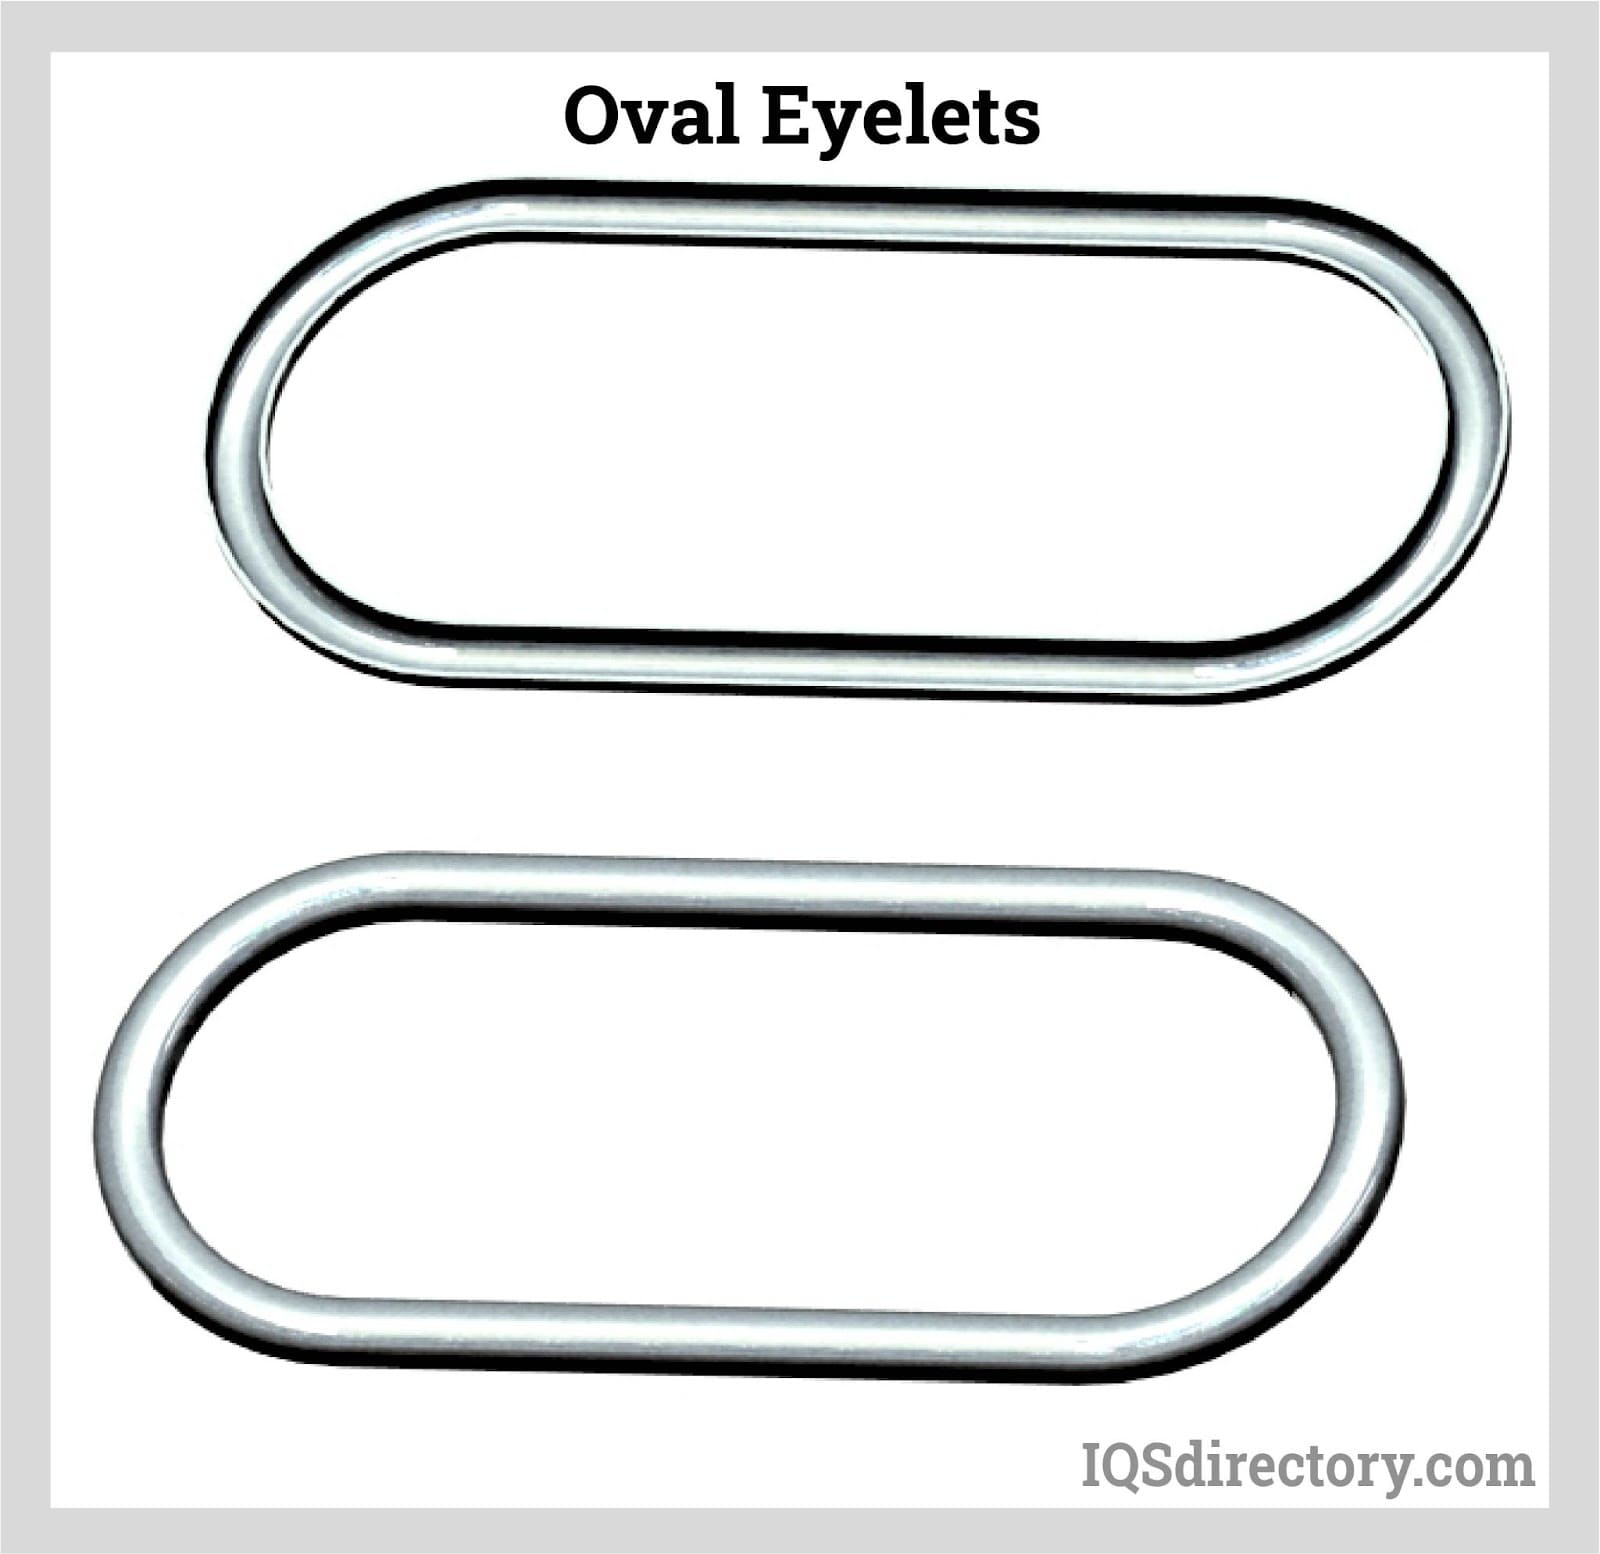 Oval Eyelets